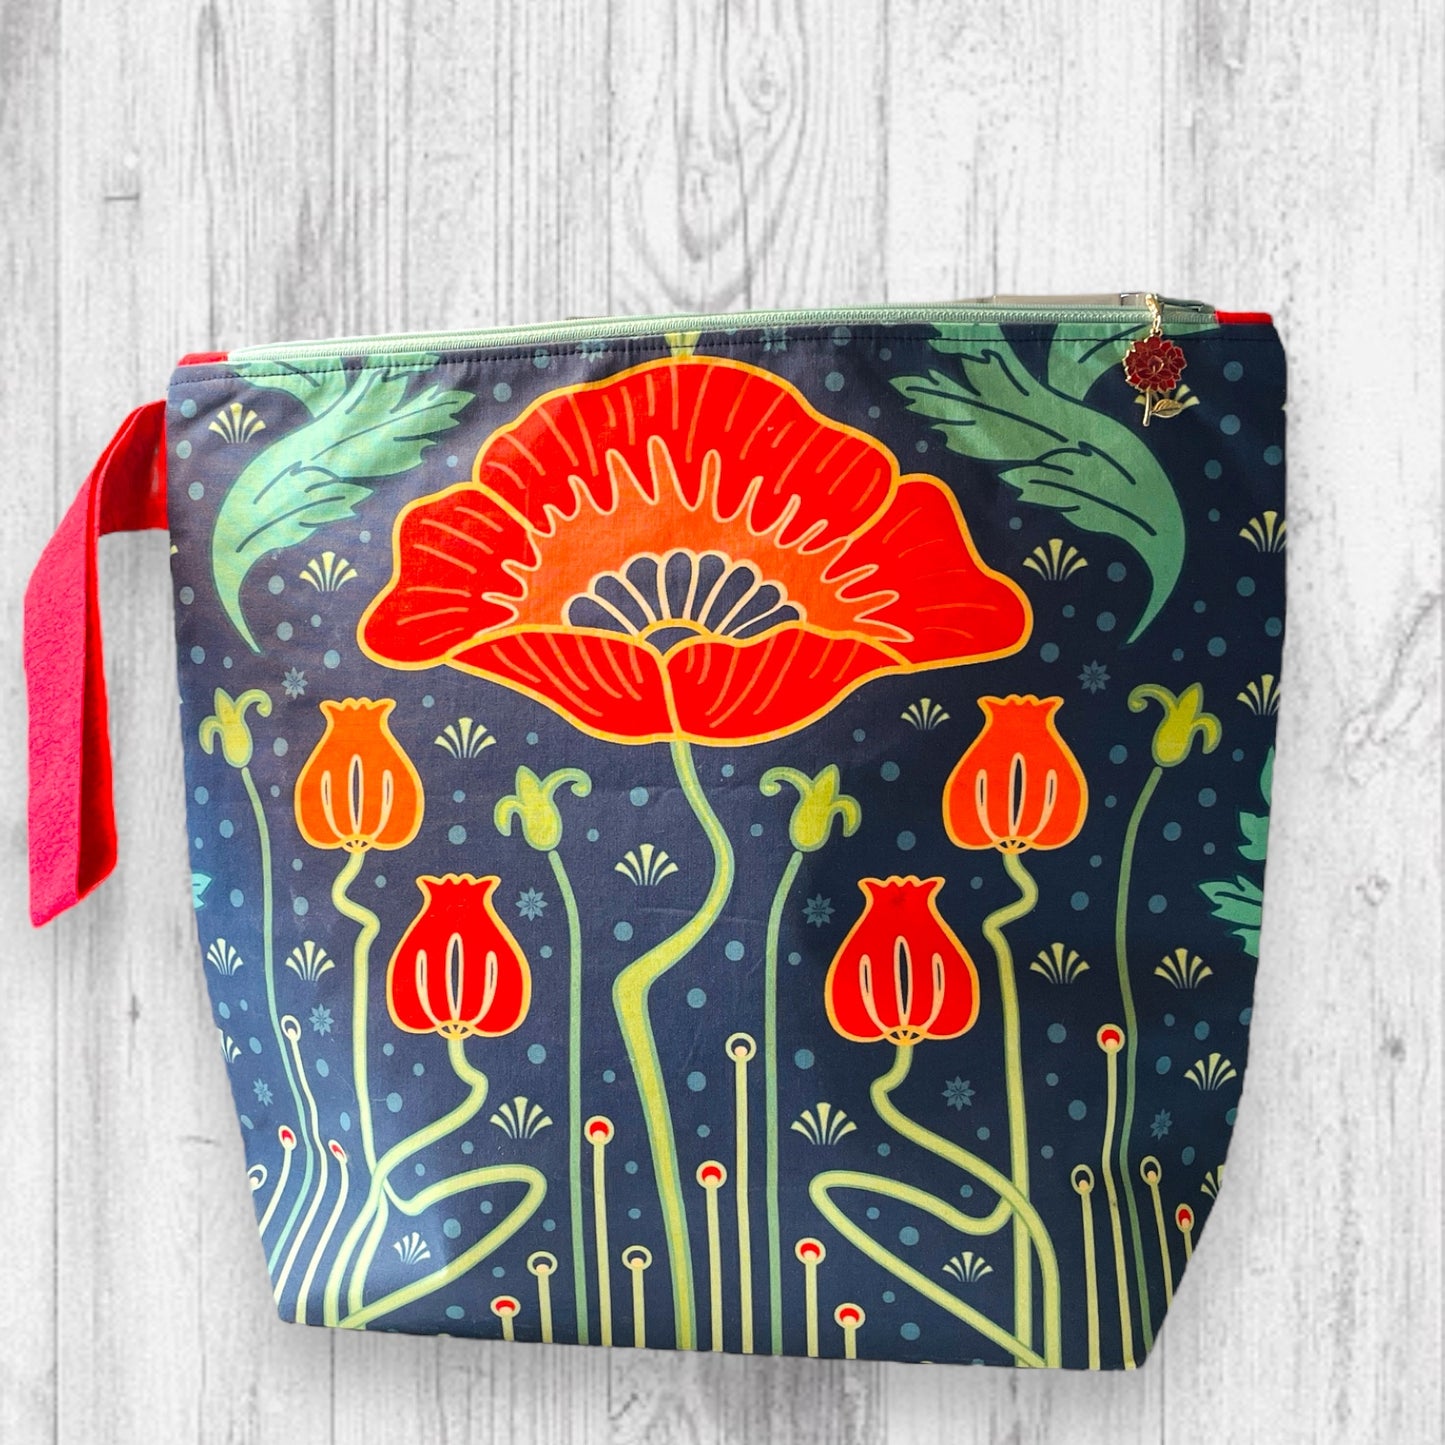 Red Flower Art Nouveau Project Bag - AdoreKnit